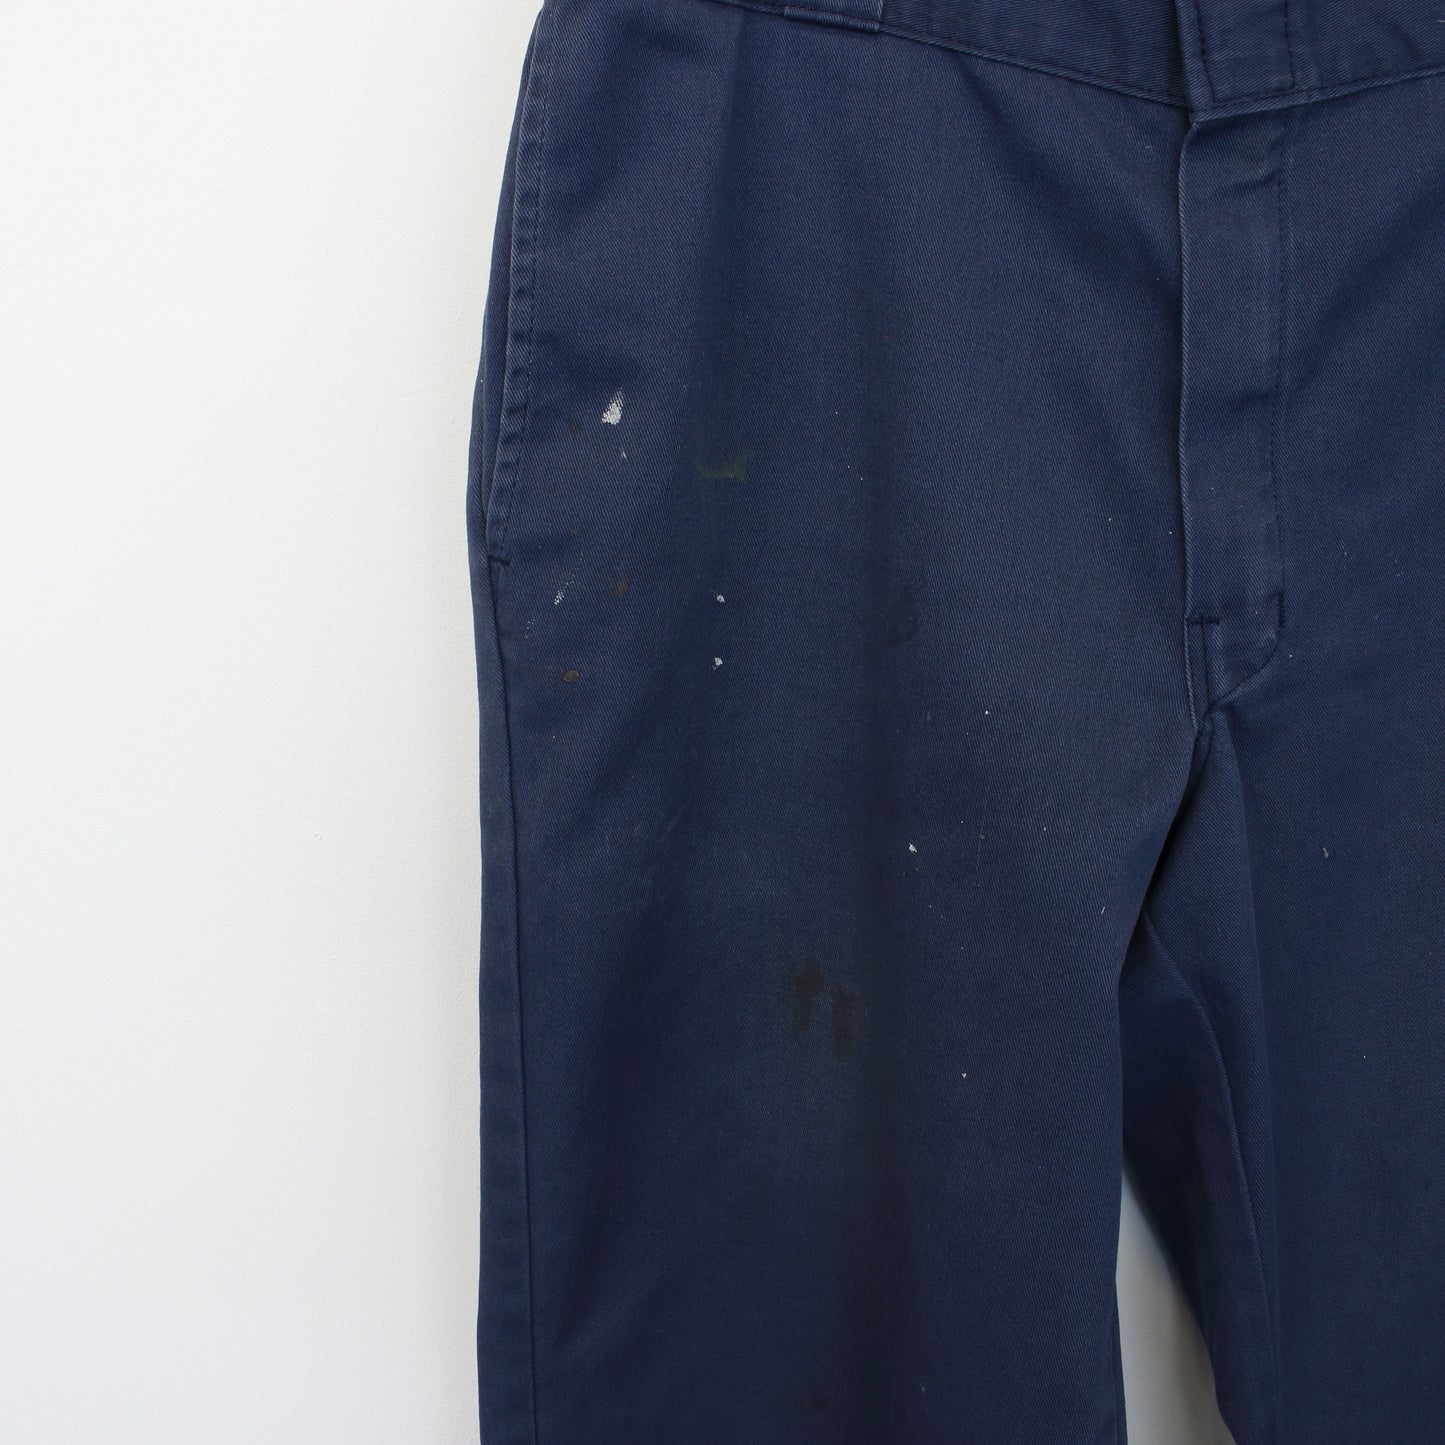 Vintage Dickies 874 original fit trousers in blue. Best fits W36